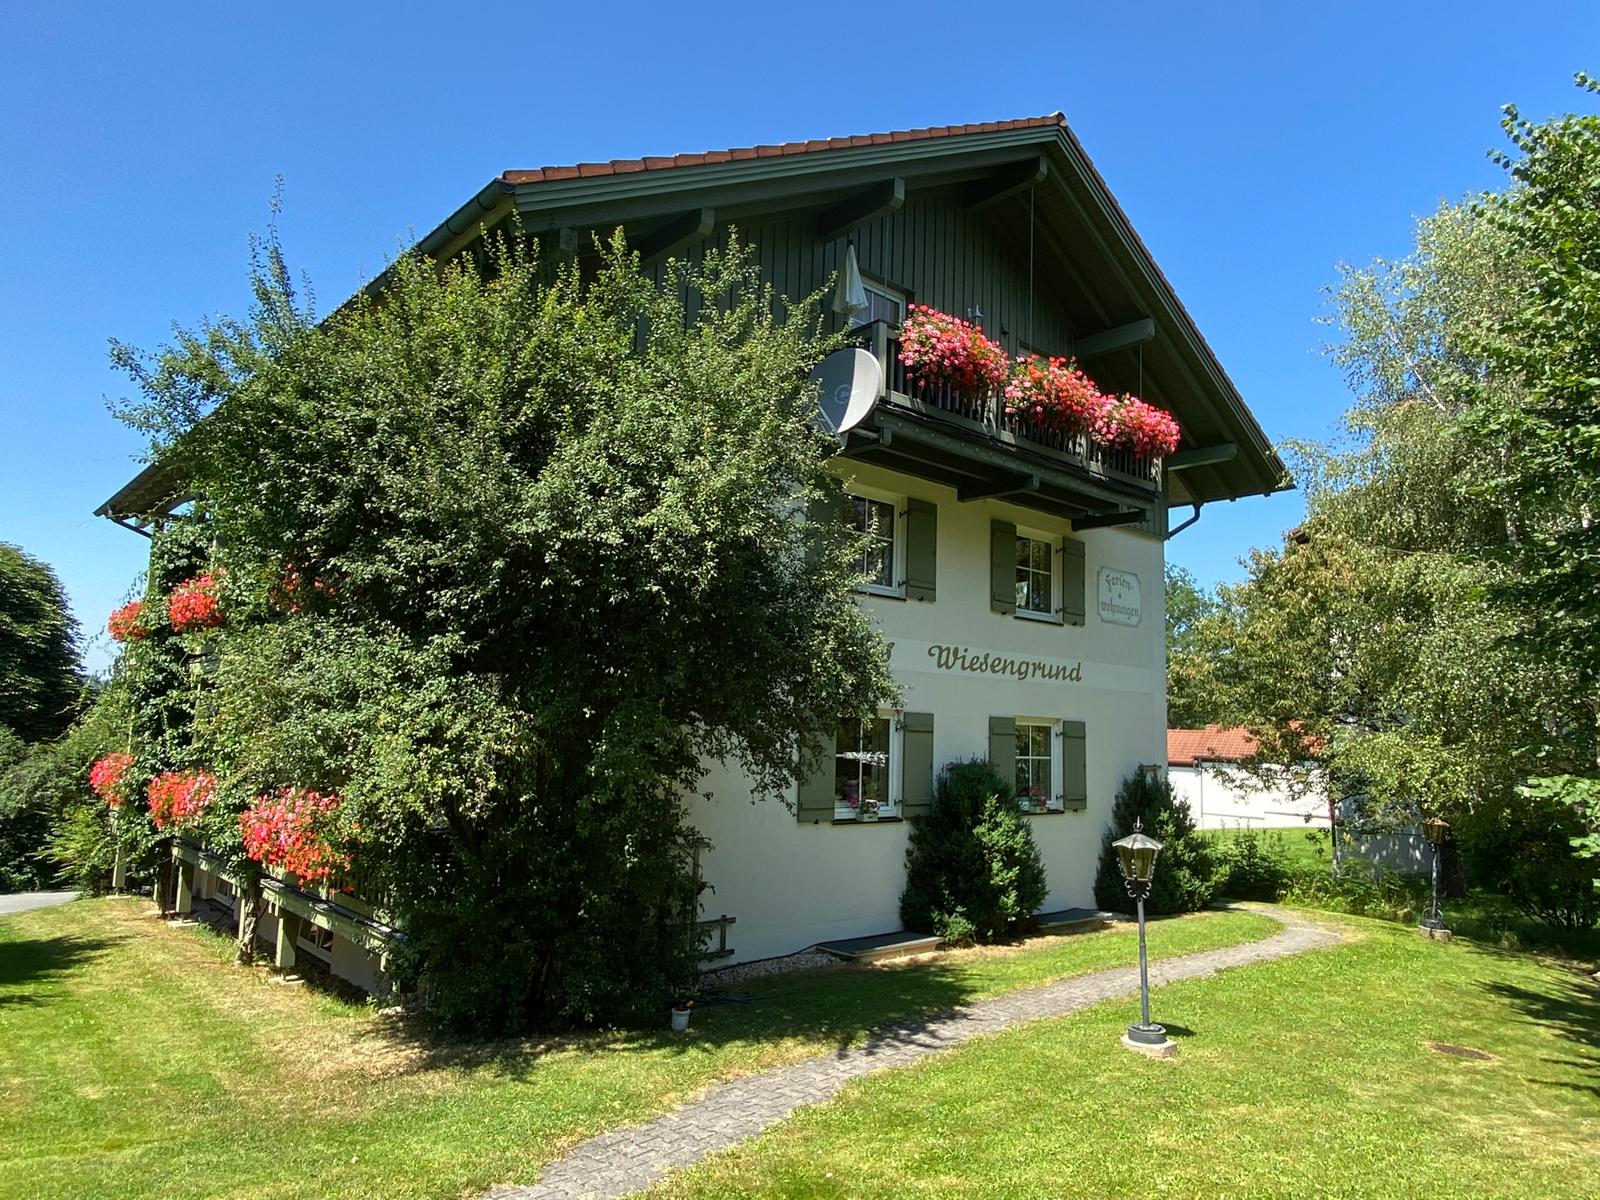 Haus Wiesengrund in Frauenau